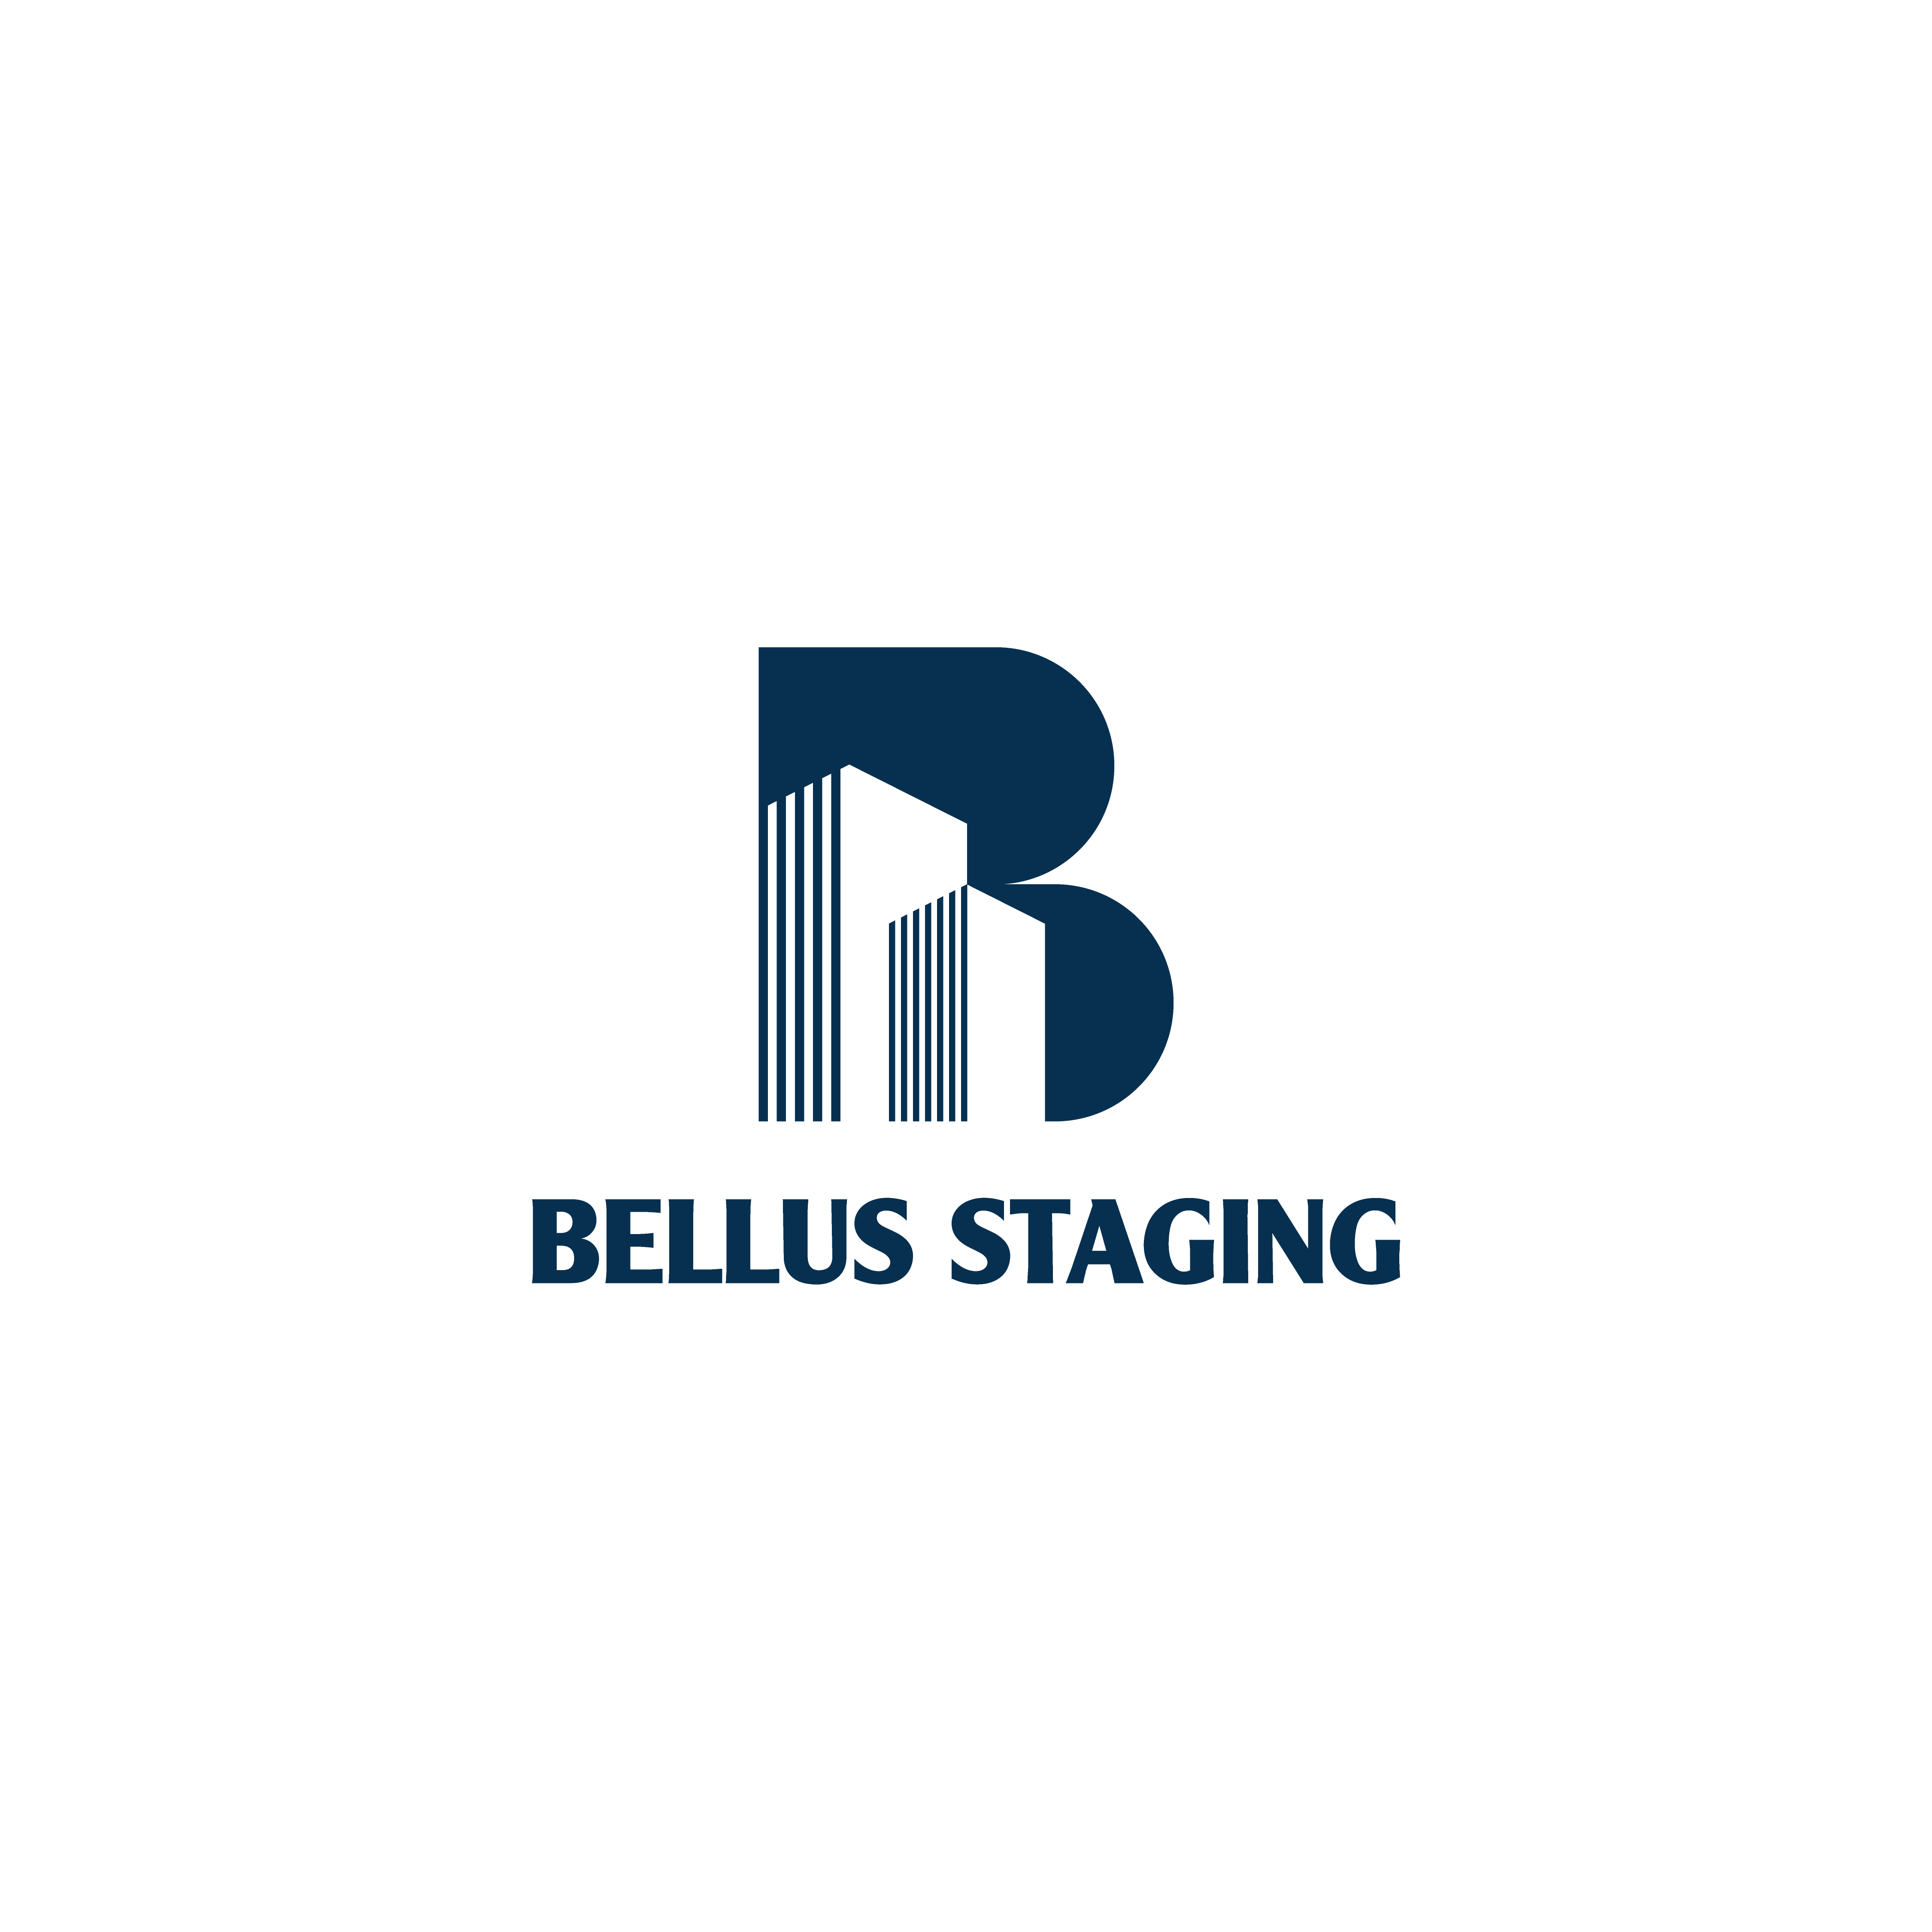 Bellus Staging